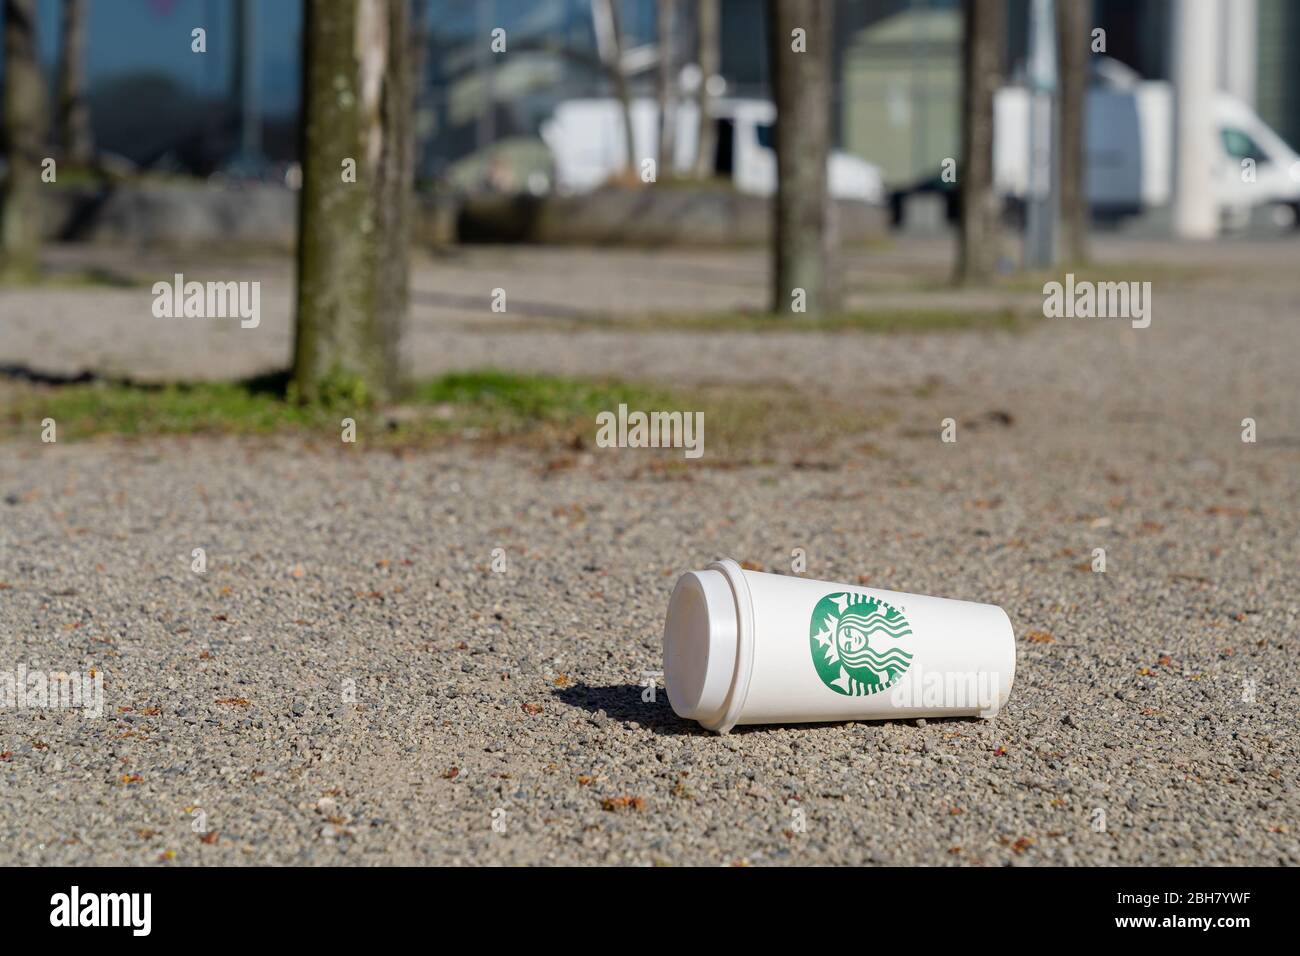 23.03.2020, Berlín, Berlín, Alemania - Copa vacía de Starbucks en el suelo. 0MK200323D084CAROEX.JPG [VERSIÓN MODELO: NO, PROPIEDAD: NO (C) CAR Foto de stock